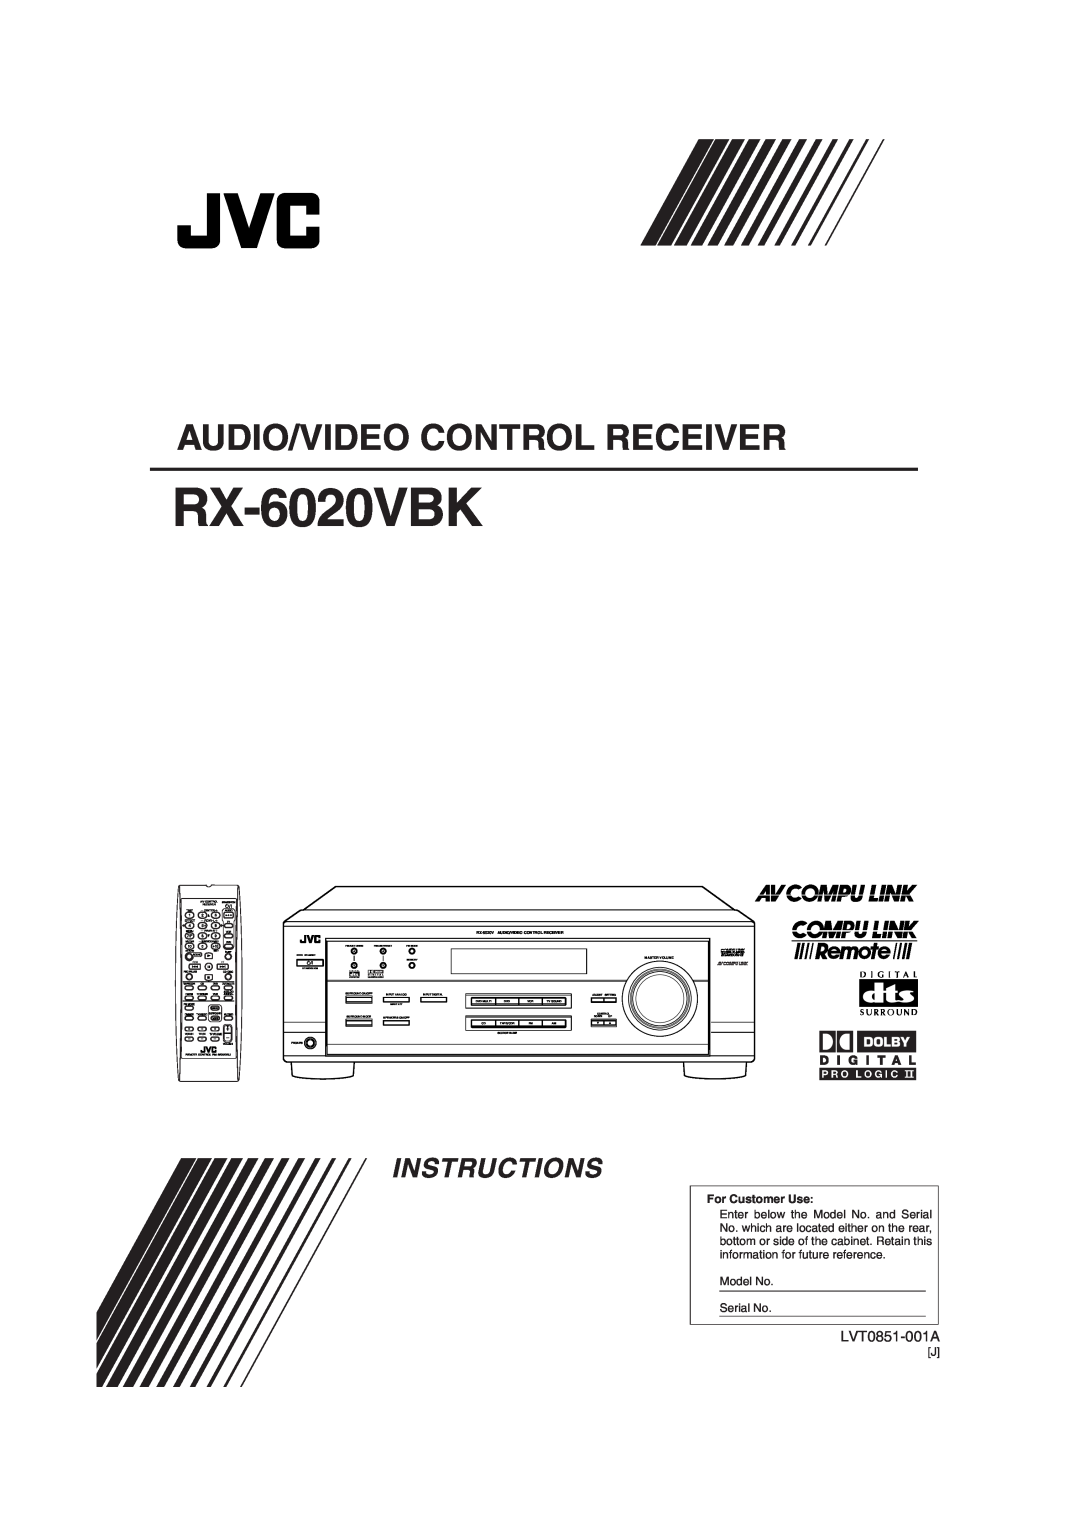 JVC RX-6020VBK manual Audio/Video Control Receiver, Instructions, LVT0851-001A 